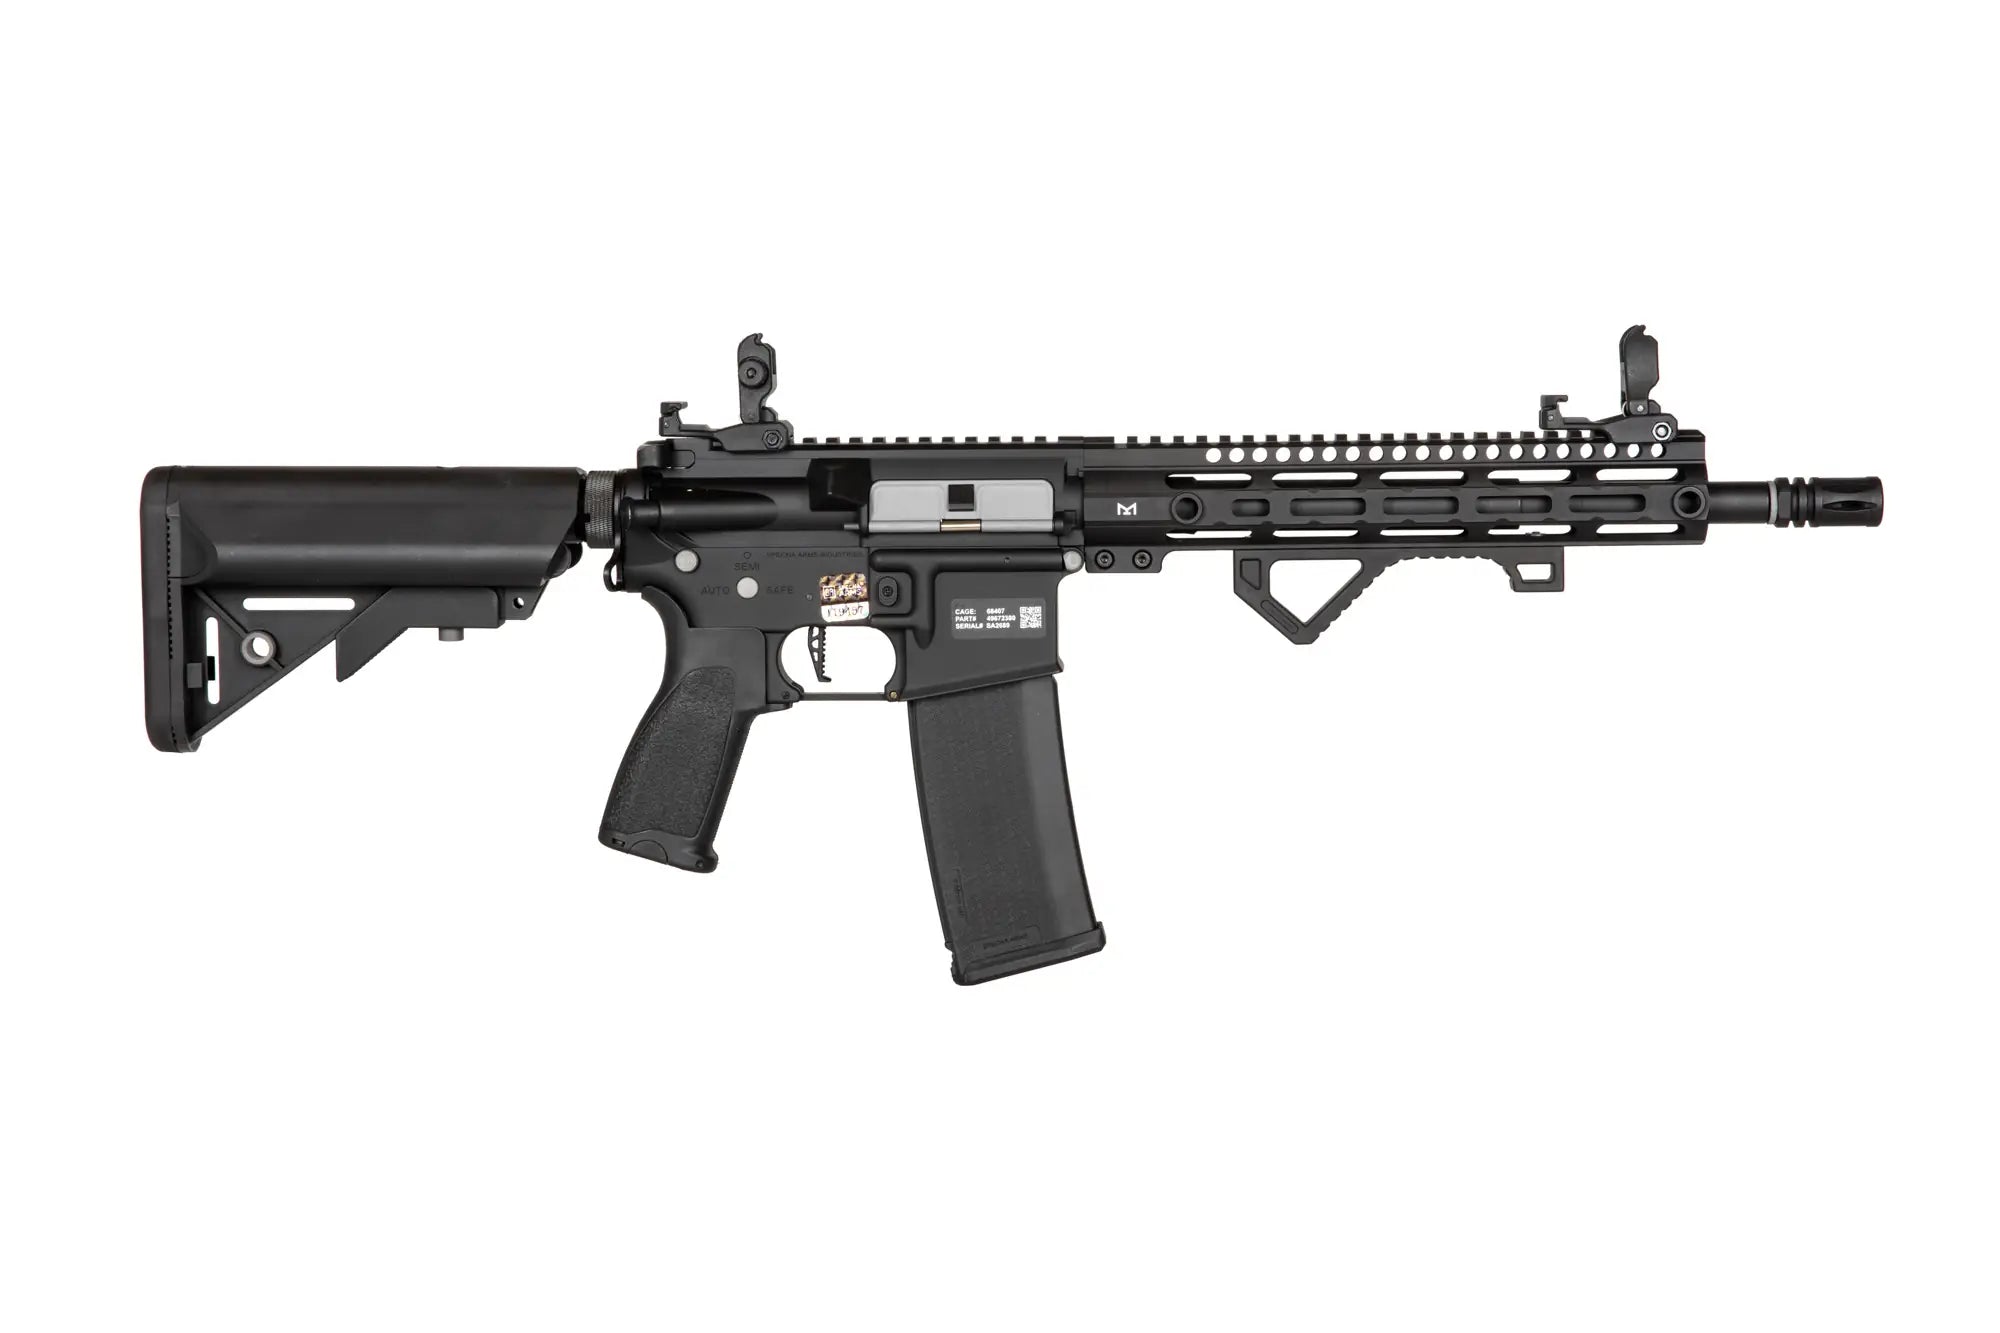 Specna Arms E20 Edge 2.0 Gate ASTER Airsoft Carbine AEG – Black | Specna Arms